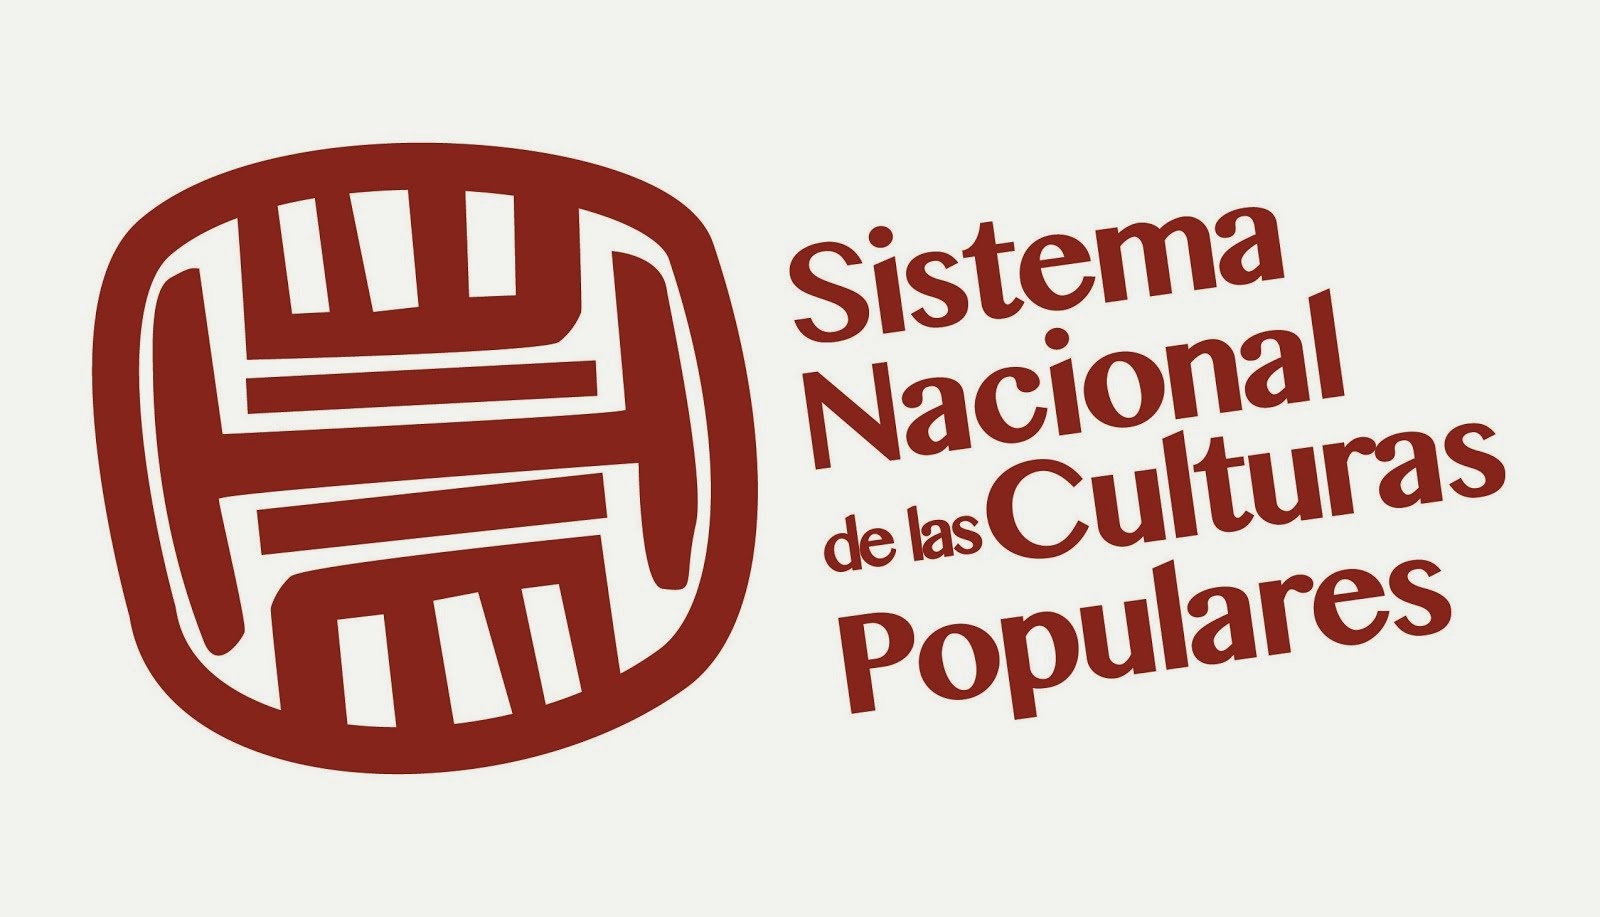 POLÍTICA CULTURAL EFICIENTE: Nace el Sistema Nacional de Culturas Populares